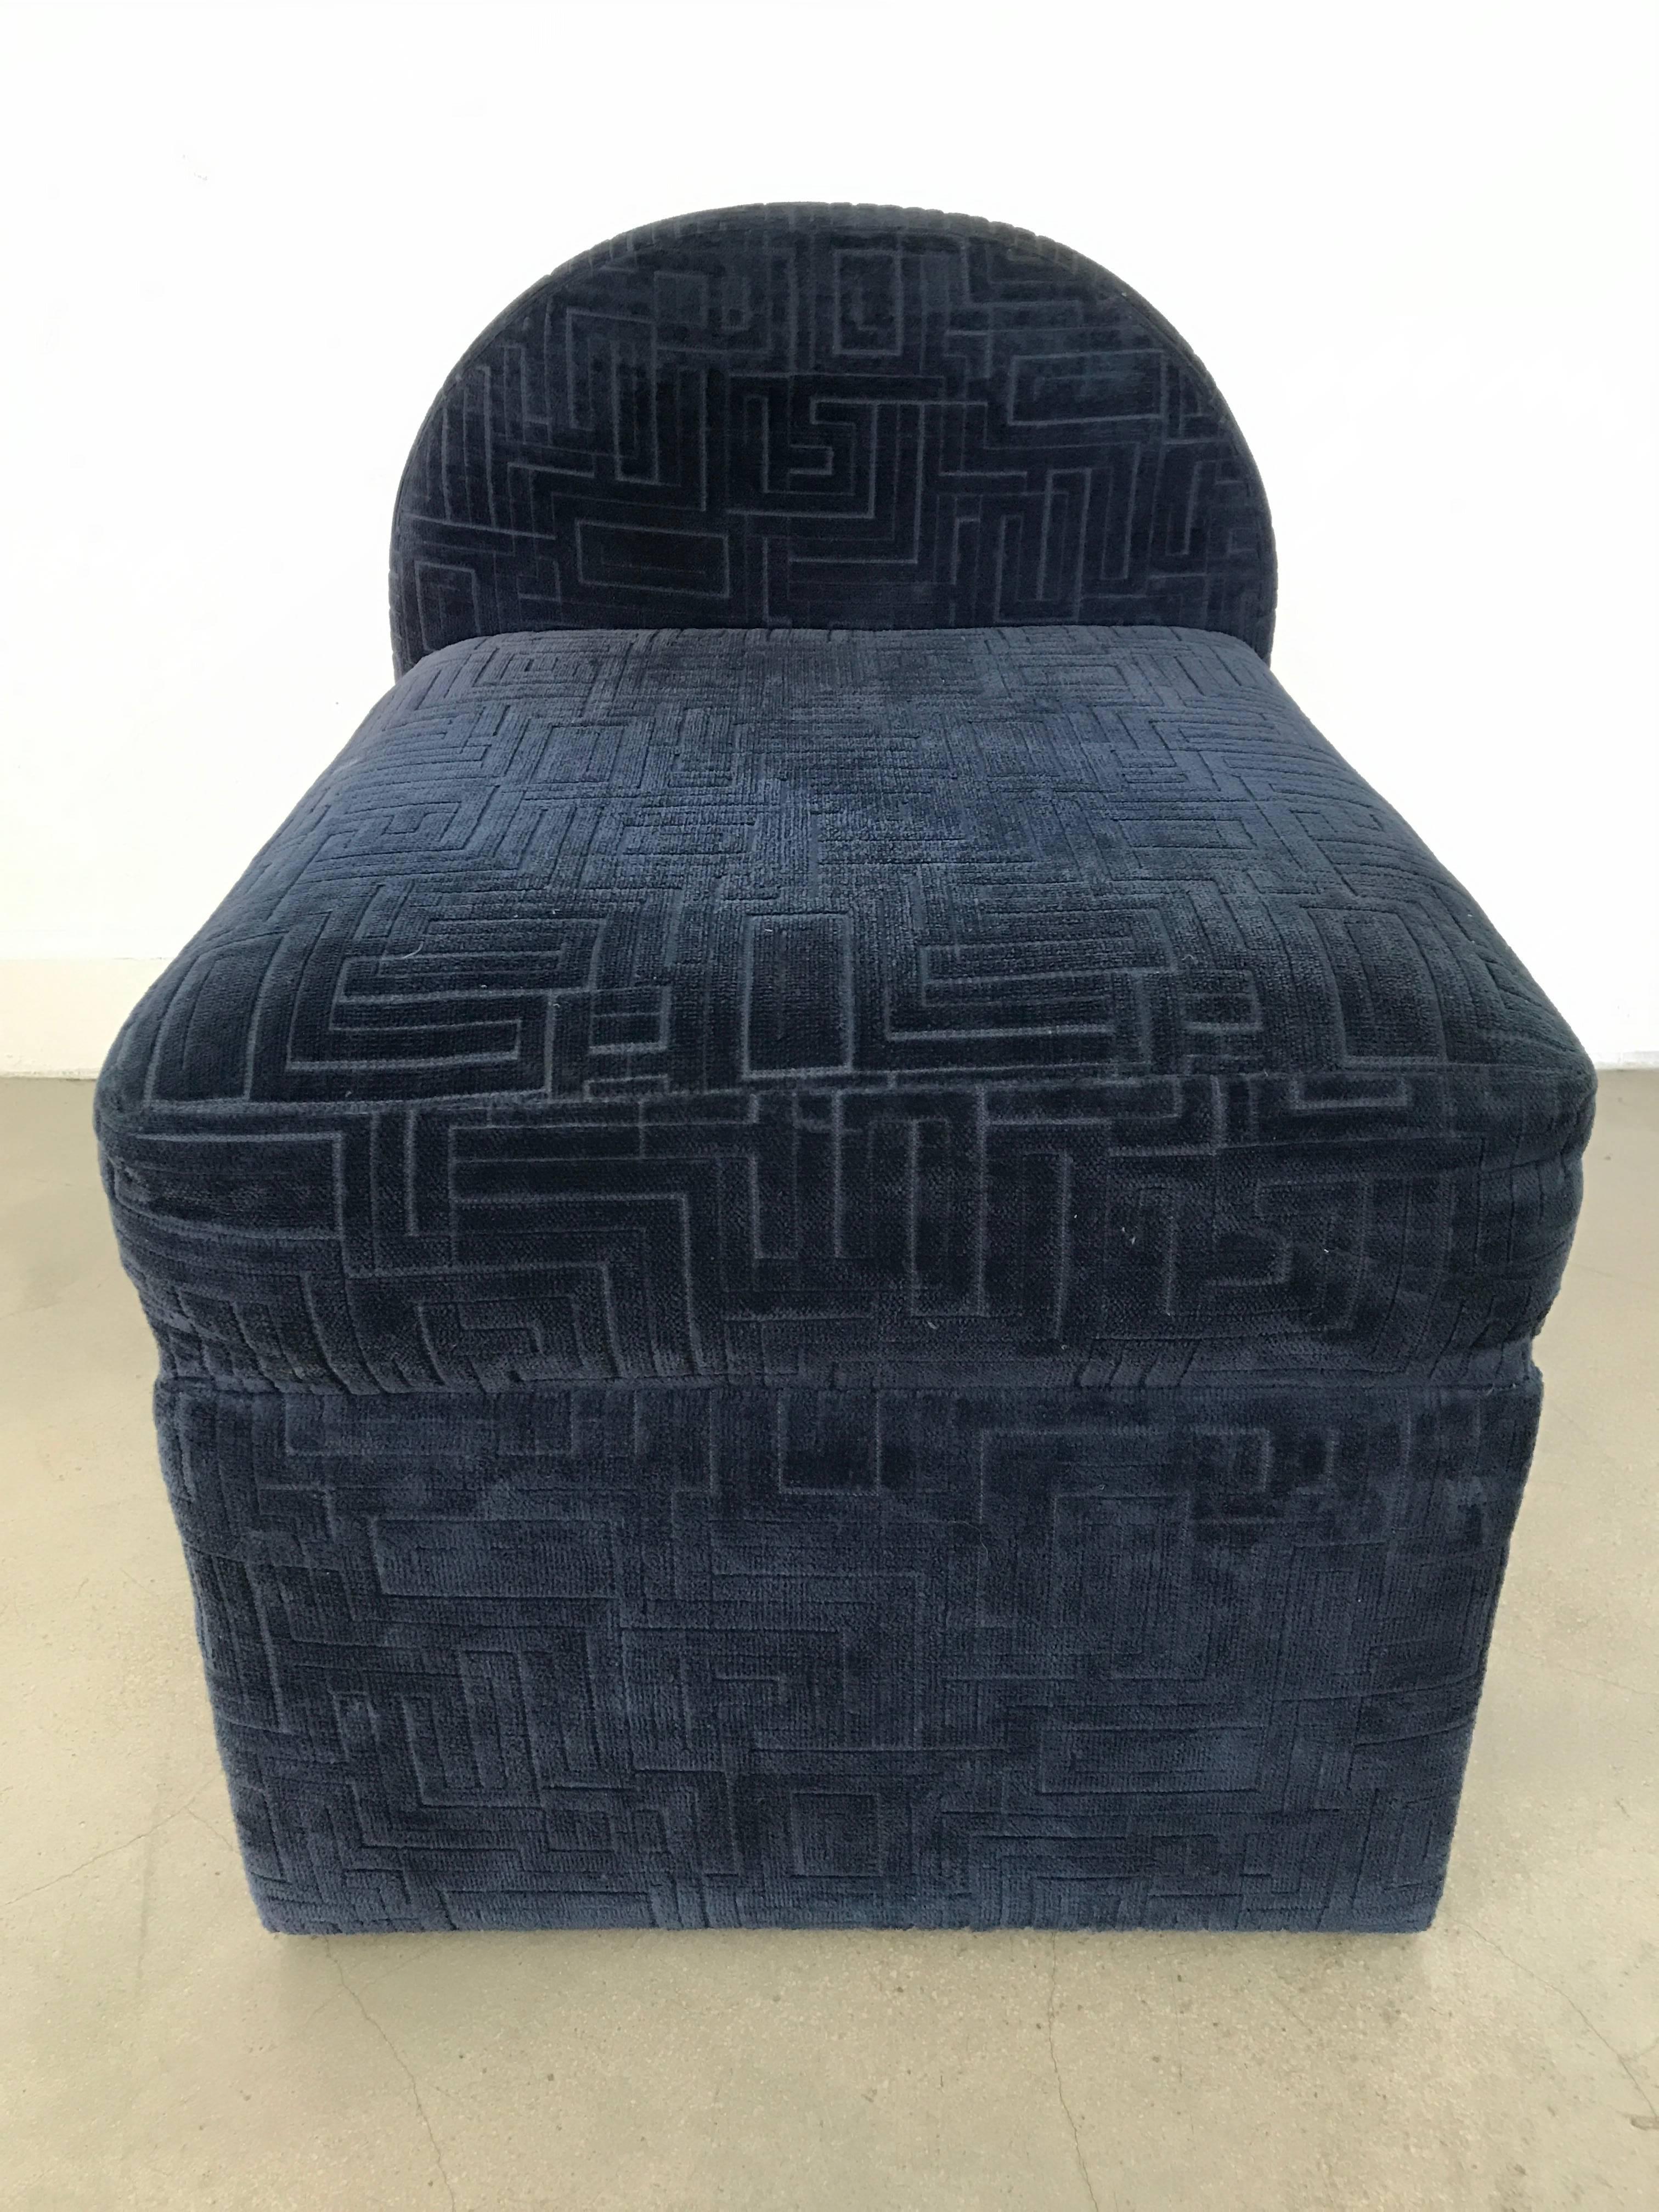 Geometric design velvet fireside or occasional chairs.